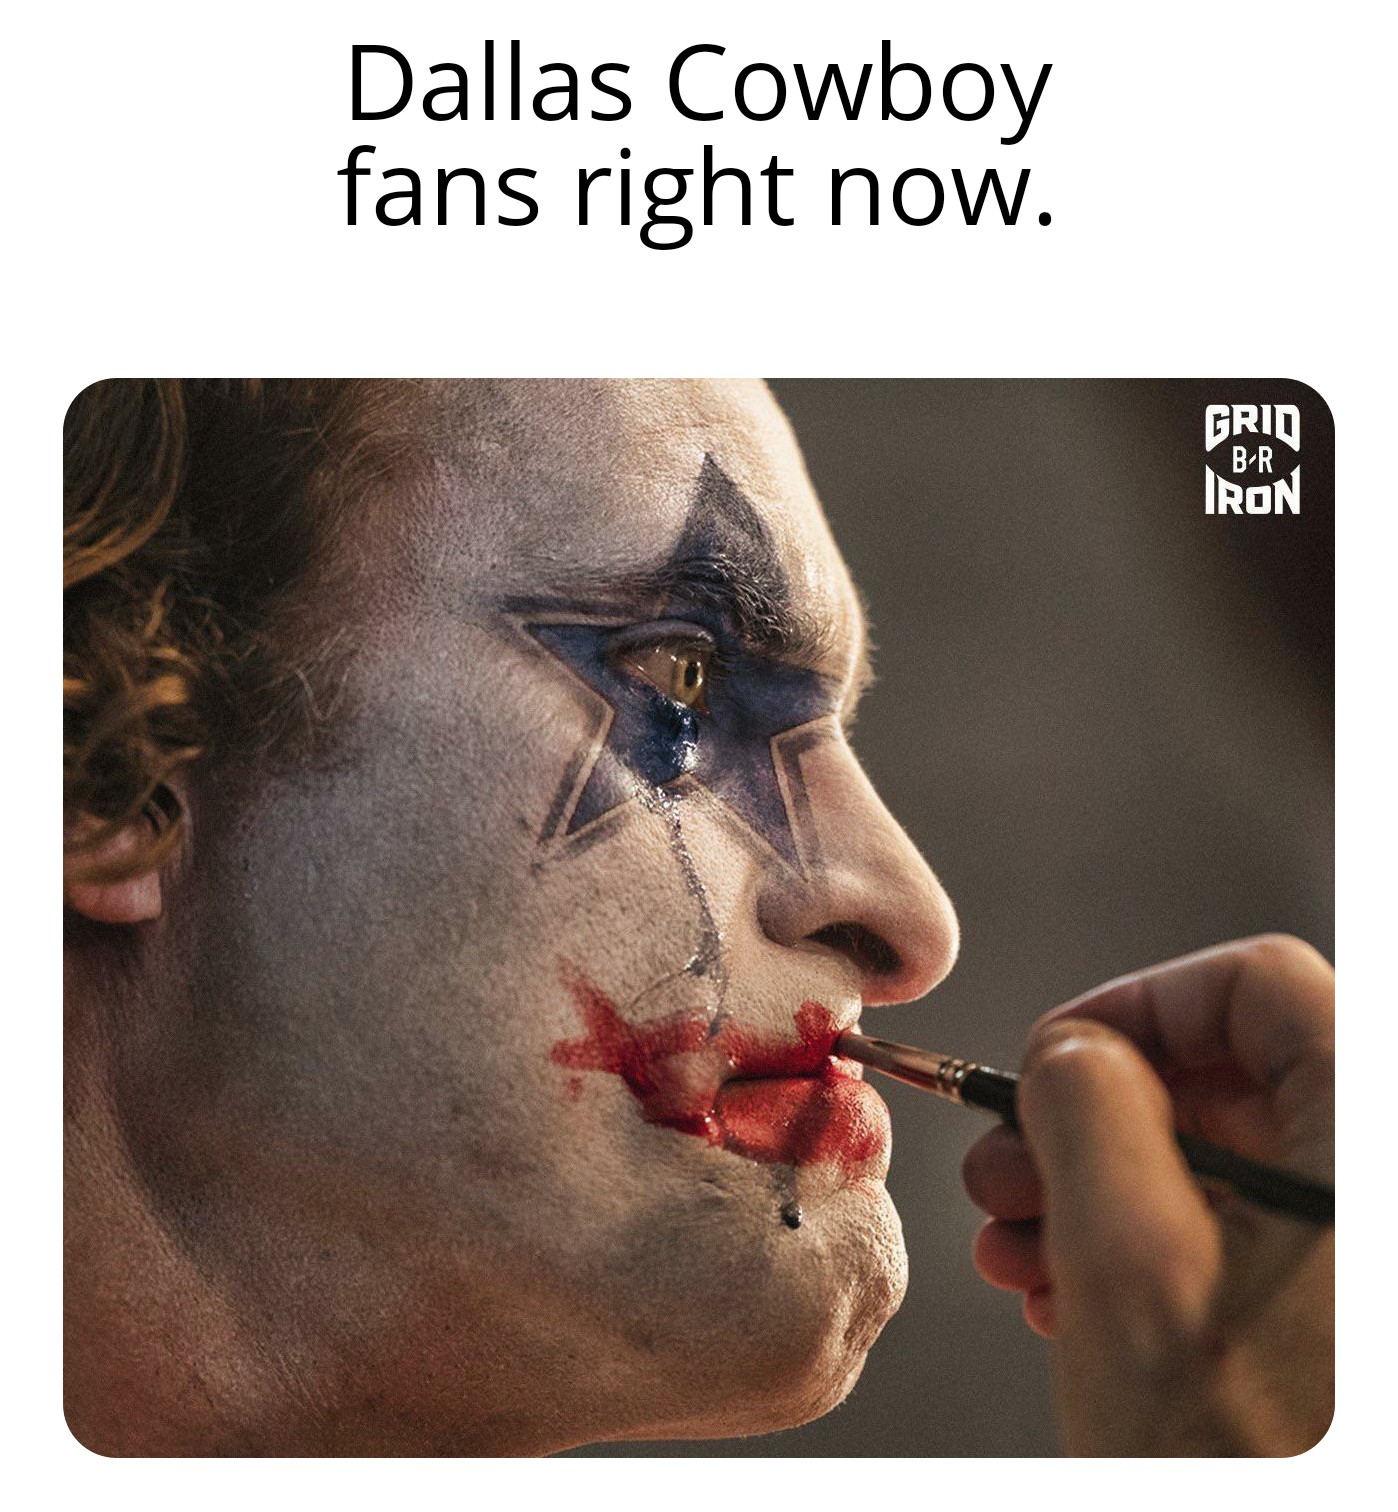 nfl meme - joker movie - Dallas Cowboy fans right now. Grid BR Iron